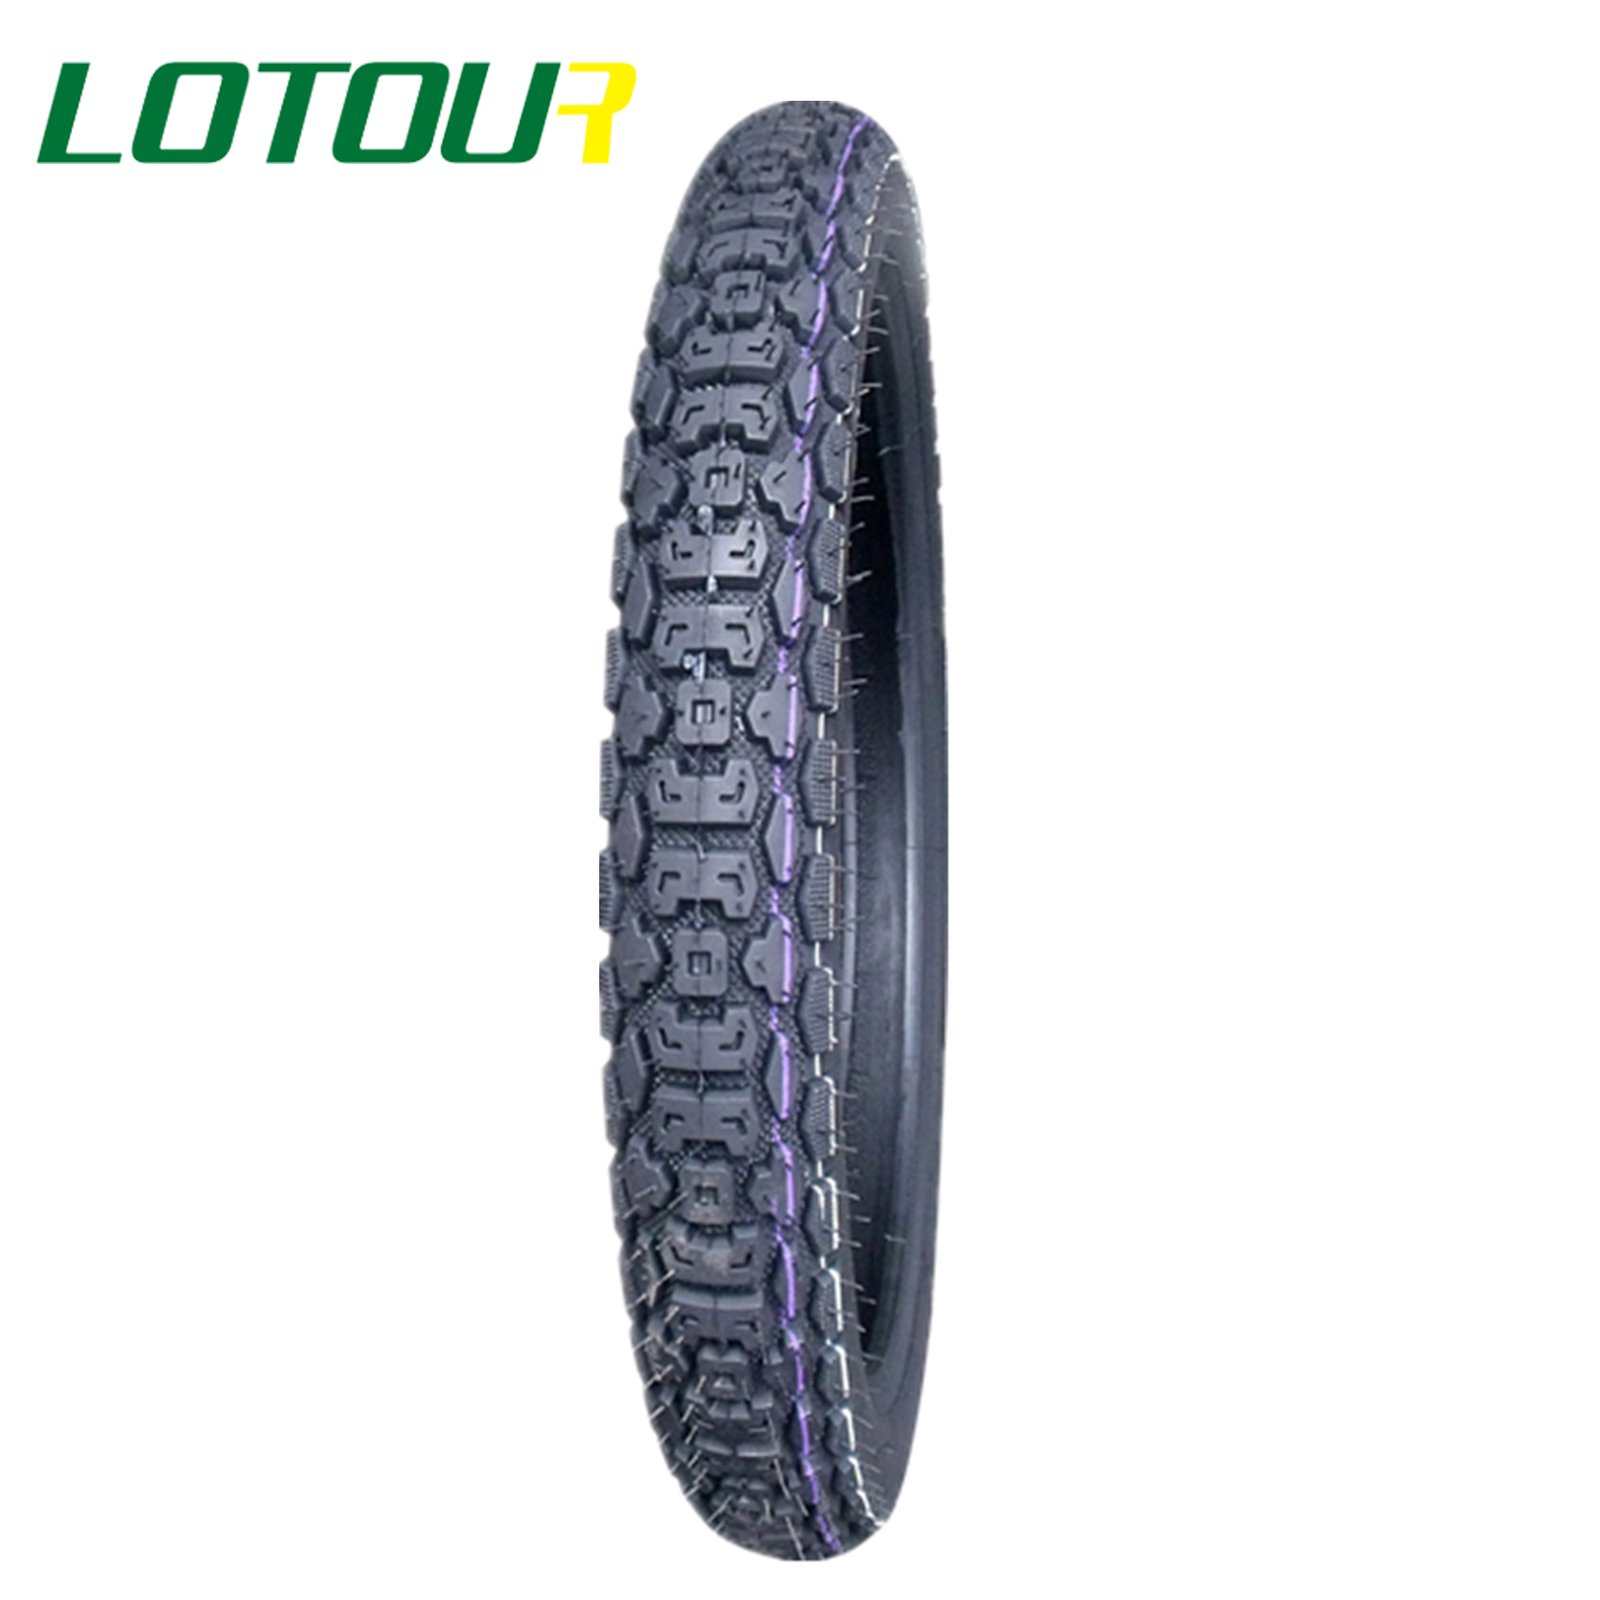 Lotour Tire M2011